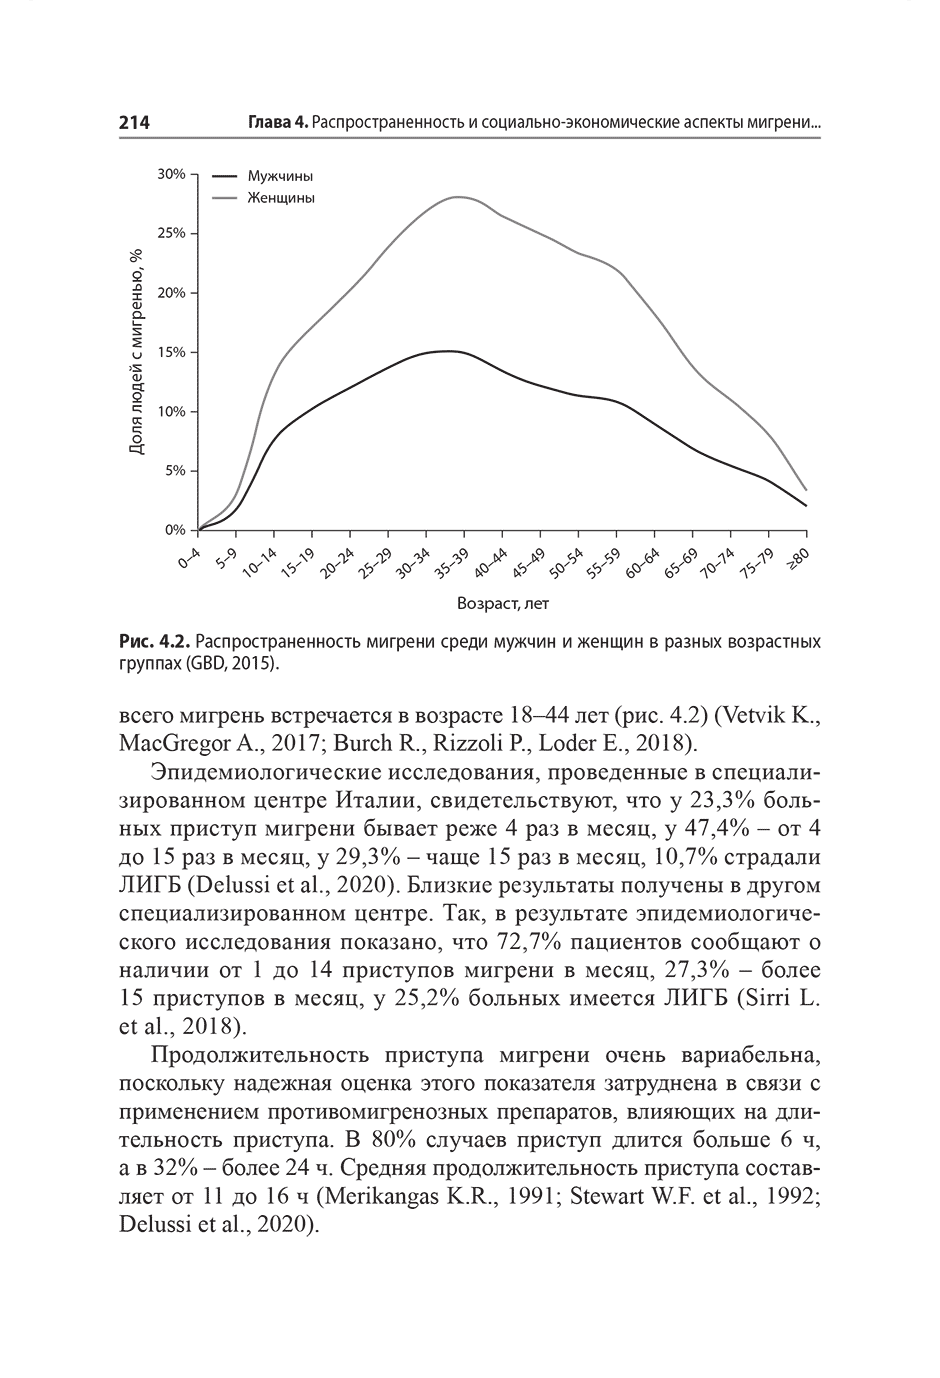 Рис. 4.2. Распространенность мигрени среди мужчин и женщин в разных возрастных группах (GBD, 2015).